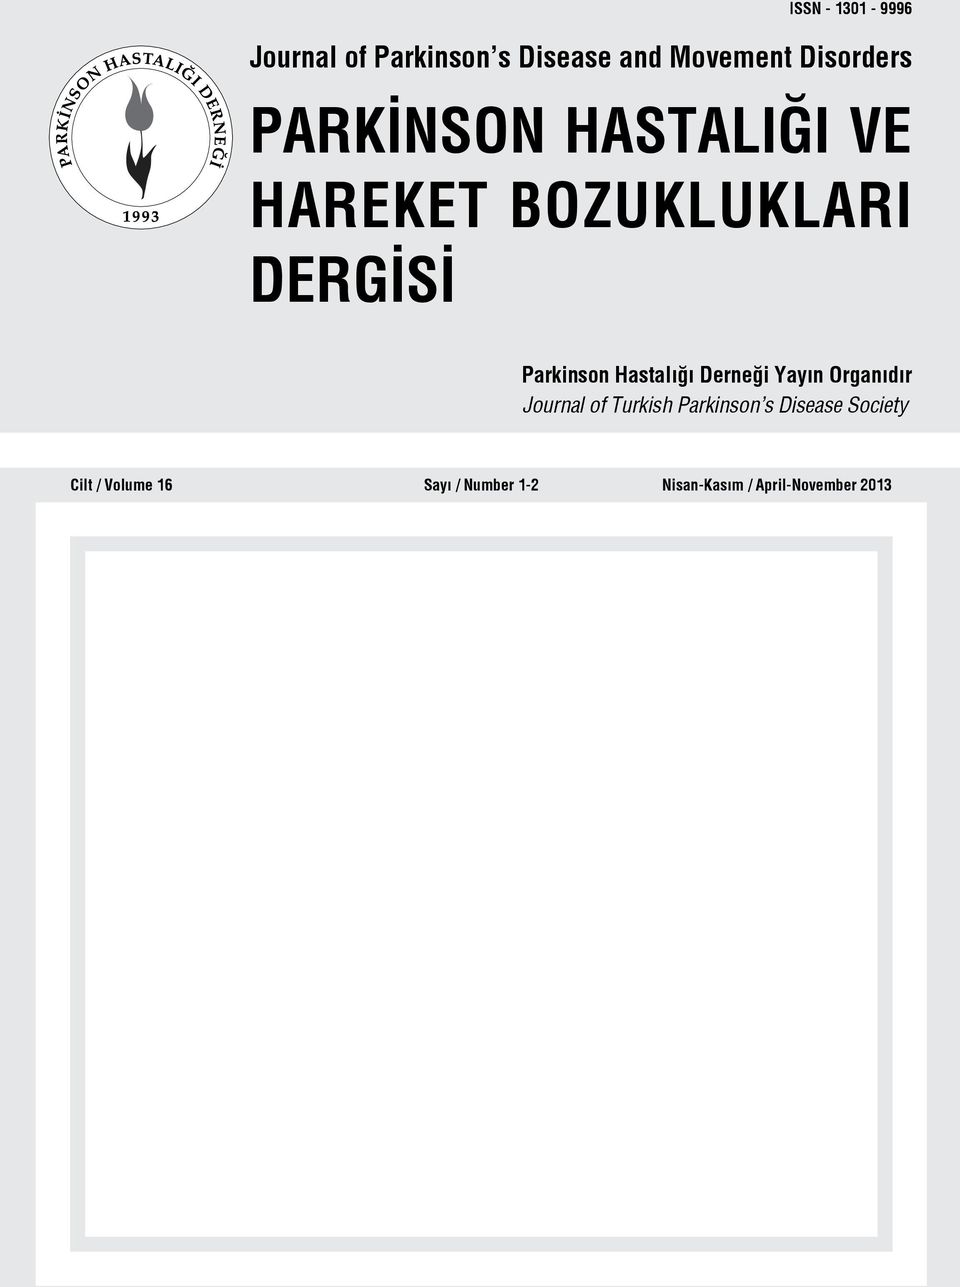 Derne i Yayın Organıdır Journal of Turkish Parkinson s Disease Society